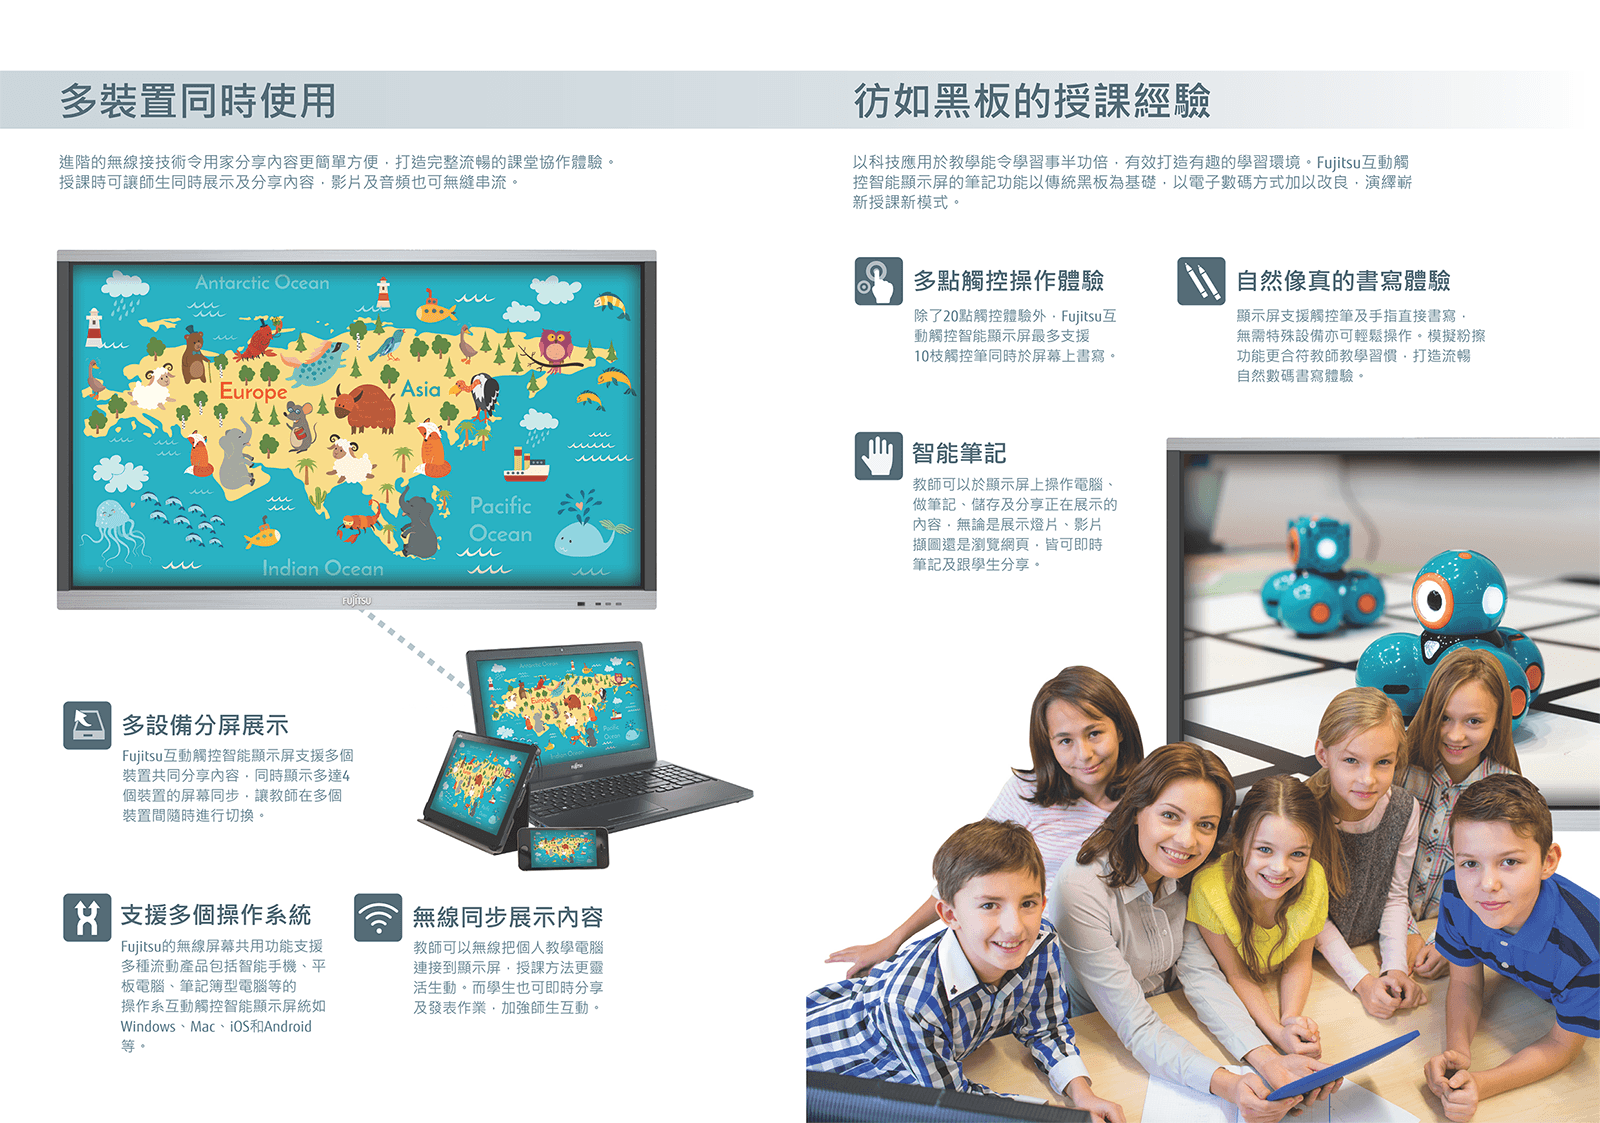 FUJITSU數碼教學新體驗: 互動觸控智能顯示屏 (學校專用電子黑板/白板) - 有助推動香港優質教育 : 歡迎學界查詢 39001988